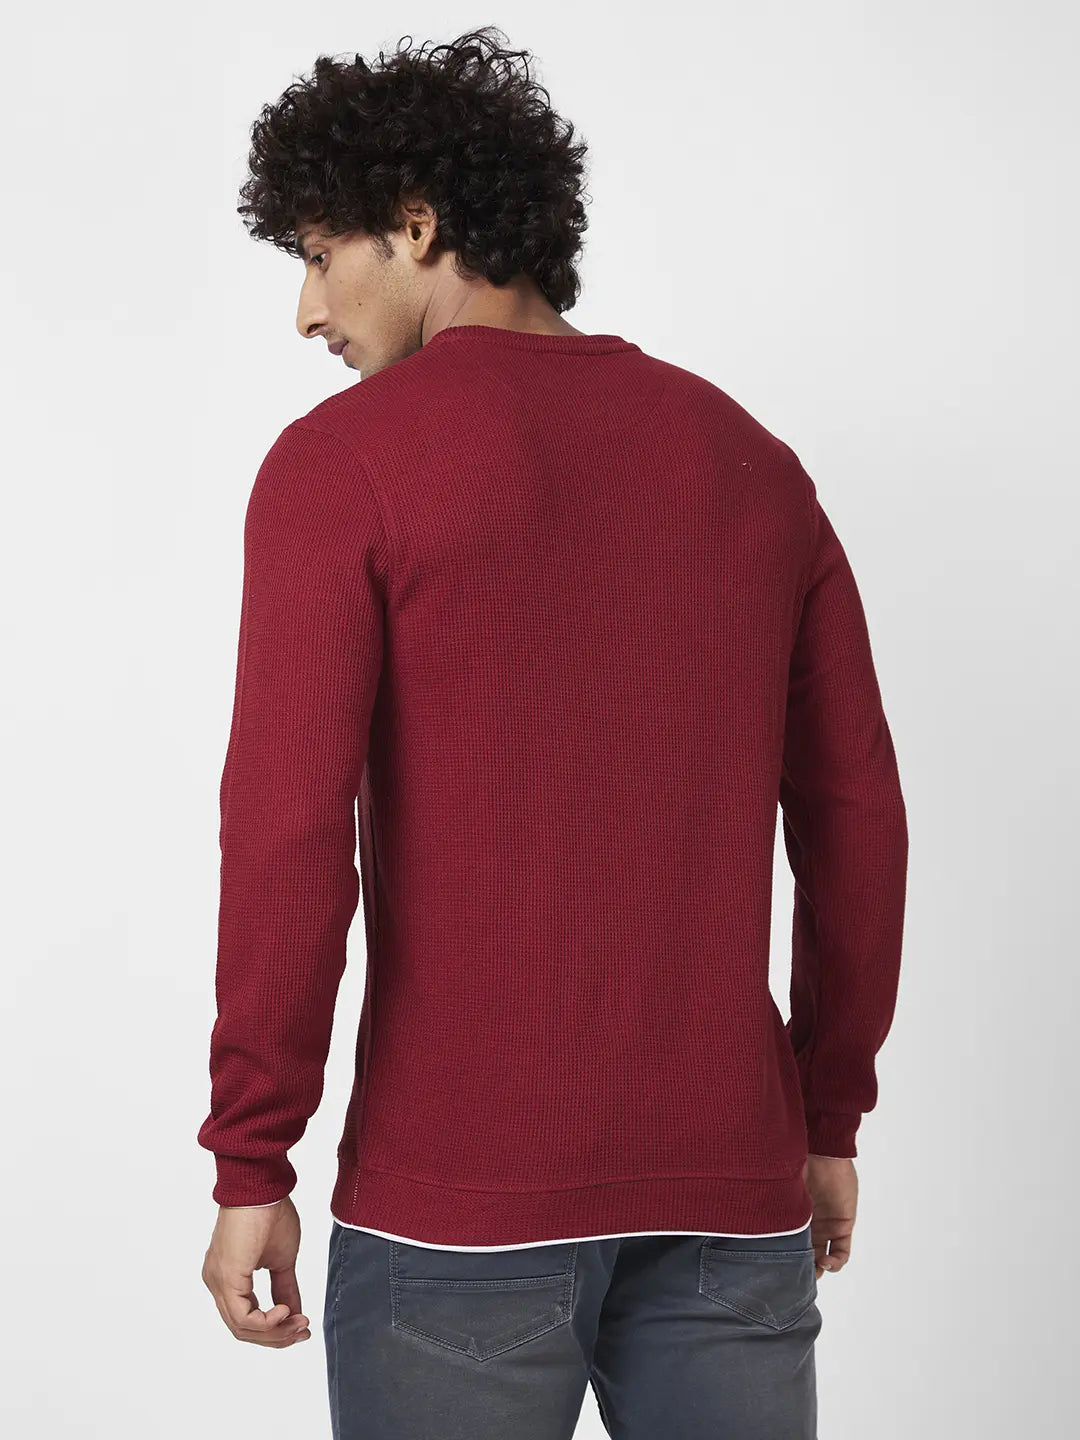 Spykar Men Deep Red Blended Slim Fit Full Sleeve Round Neck Printed Casual Sweatshirt